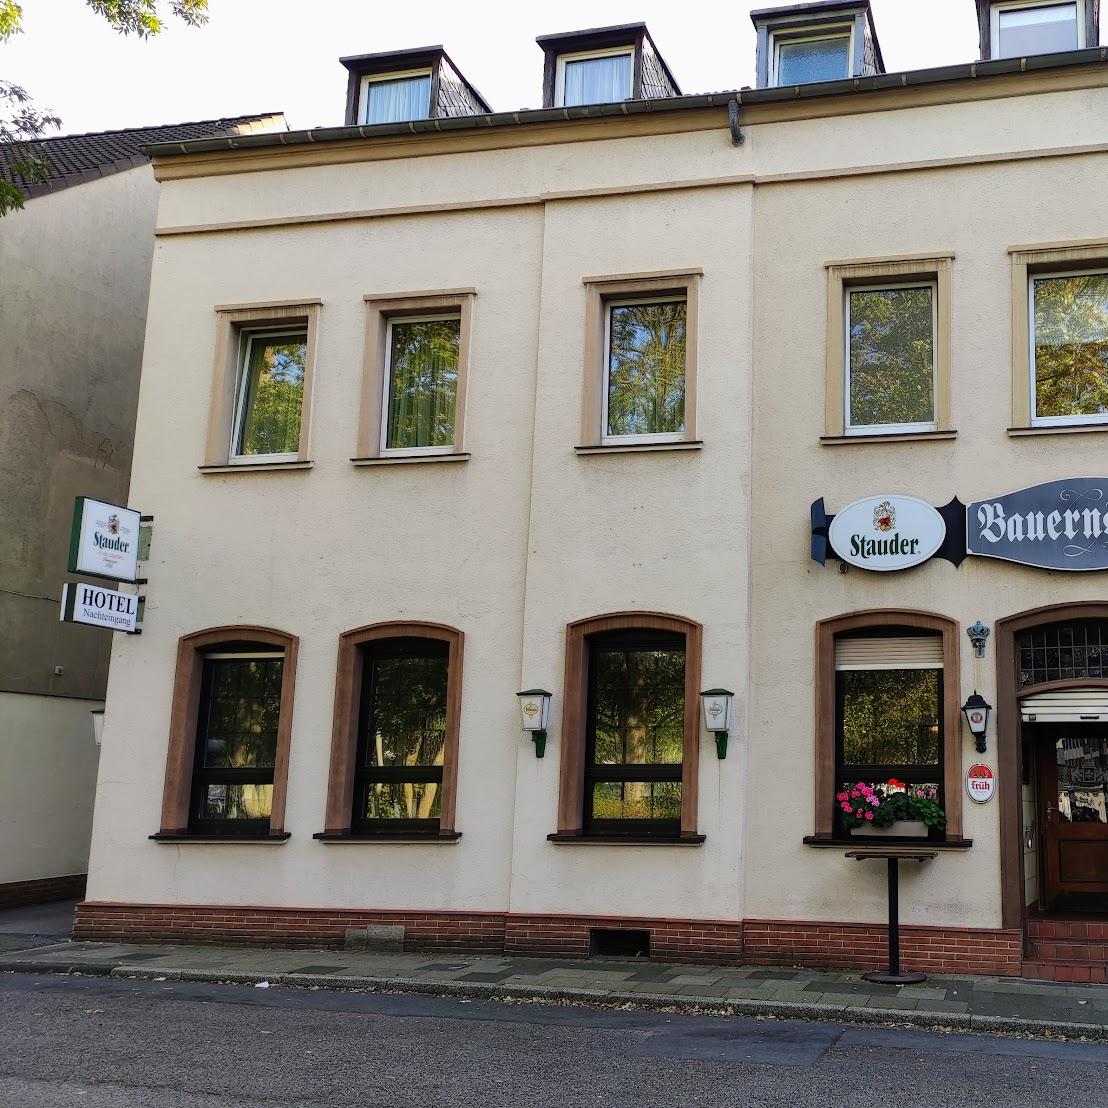 Restaurant "Bauernstube" in Oberhausen